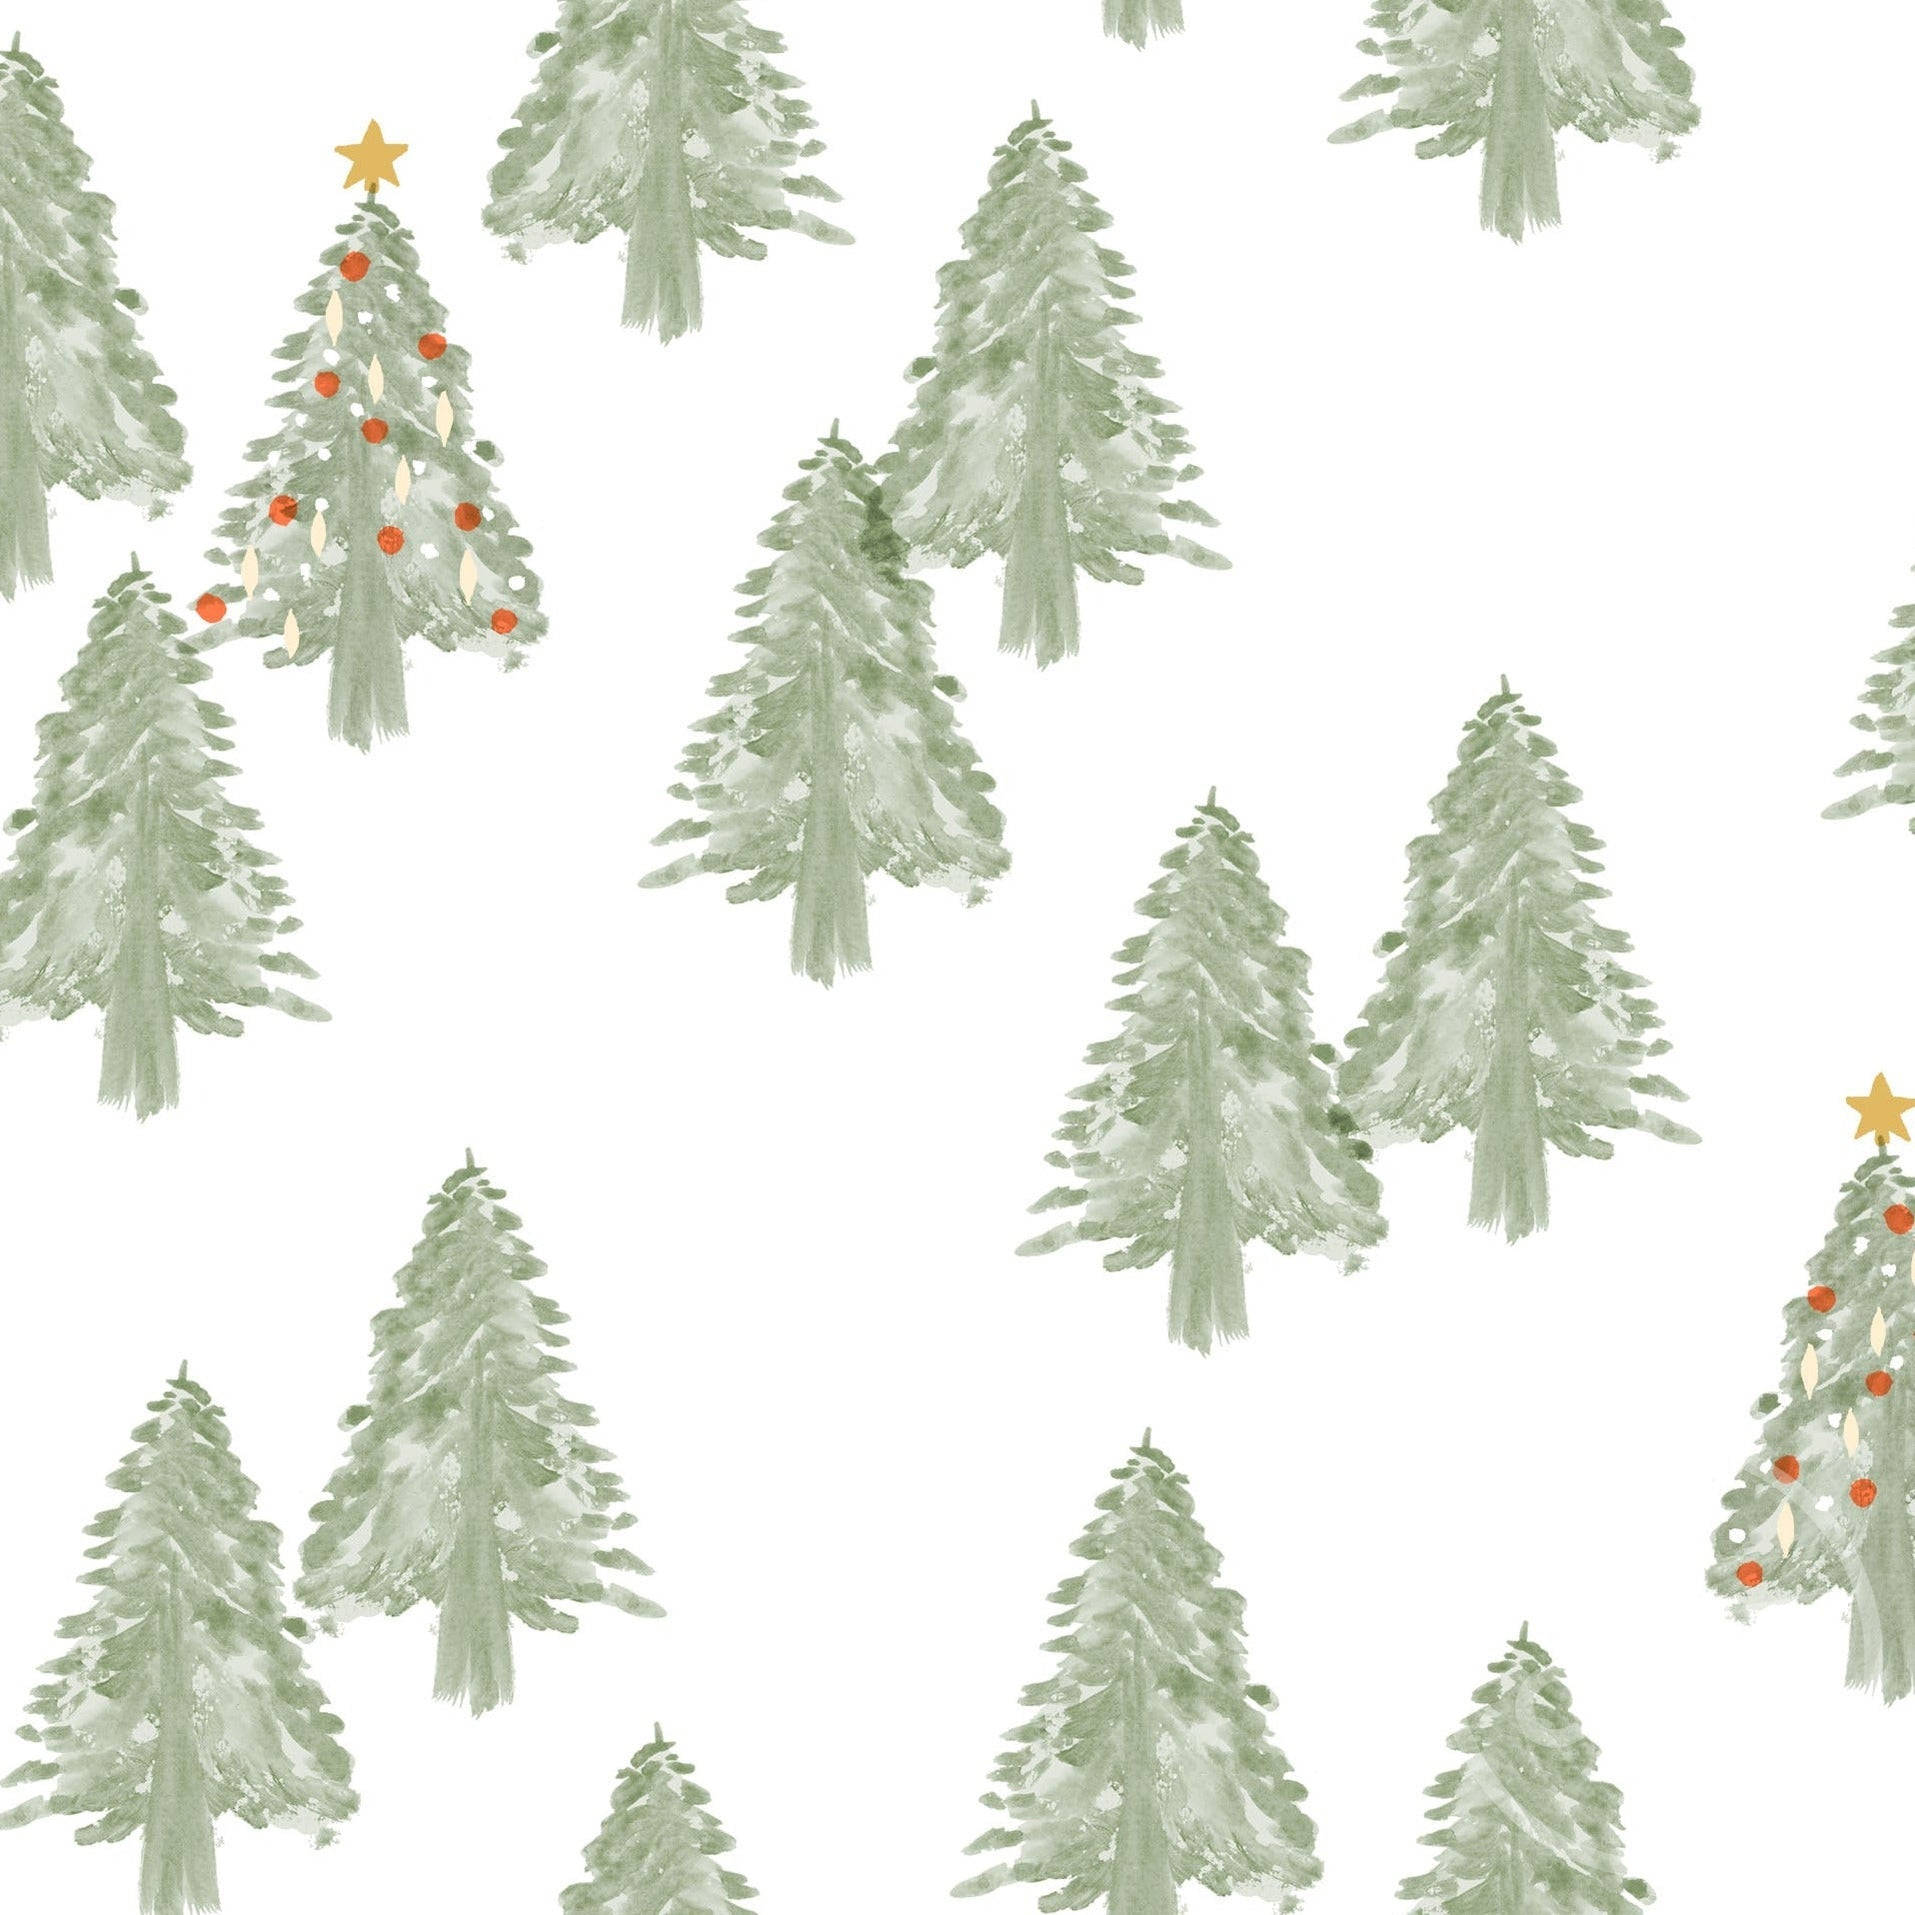 Et pragtfuldt syn af sne-dækkede nåletræer i et magisk jule skov. Wallpaper